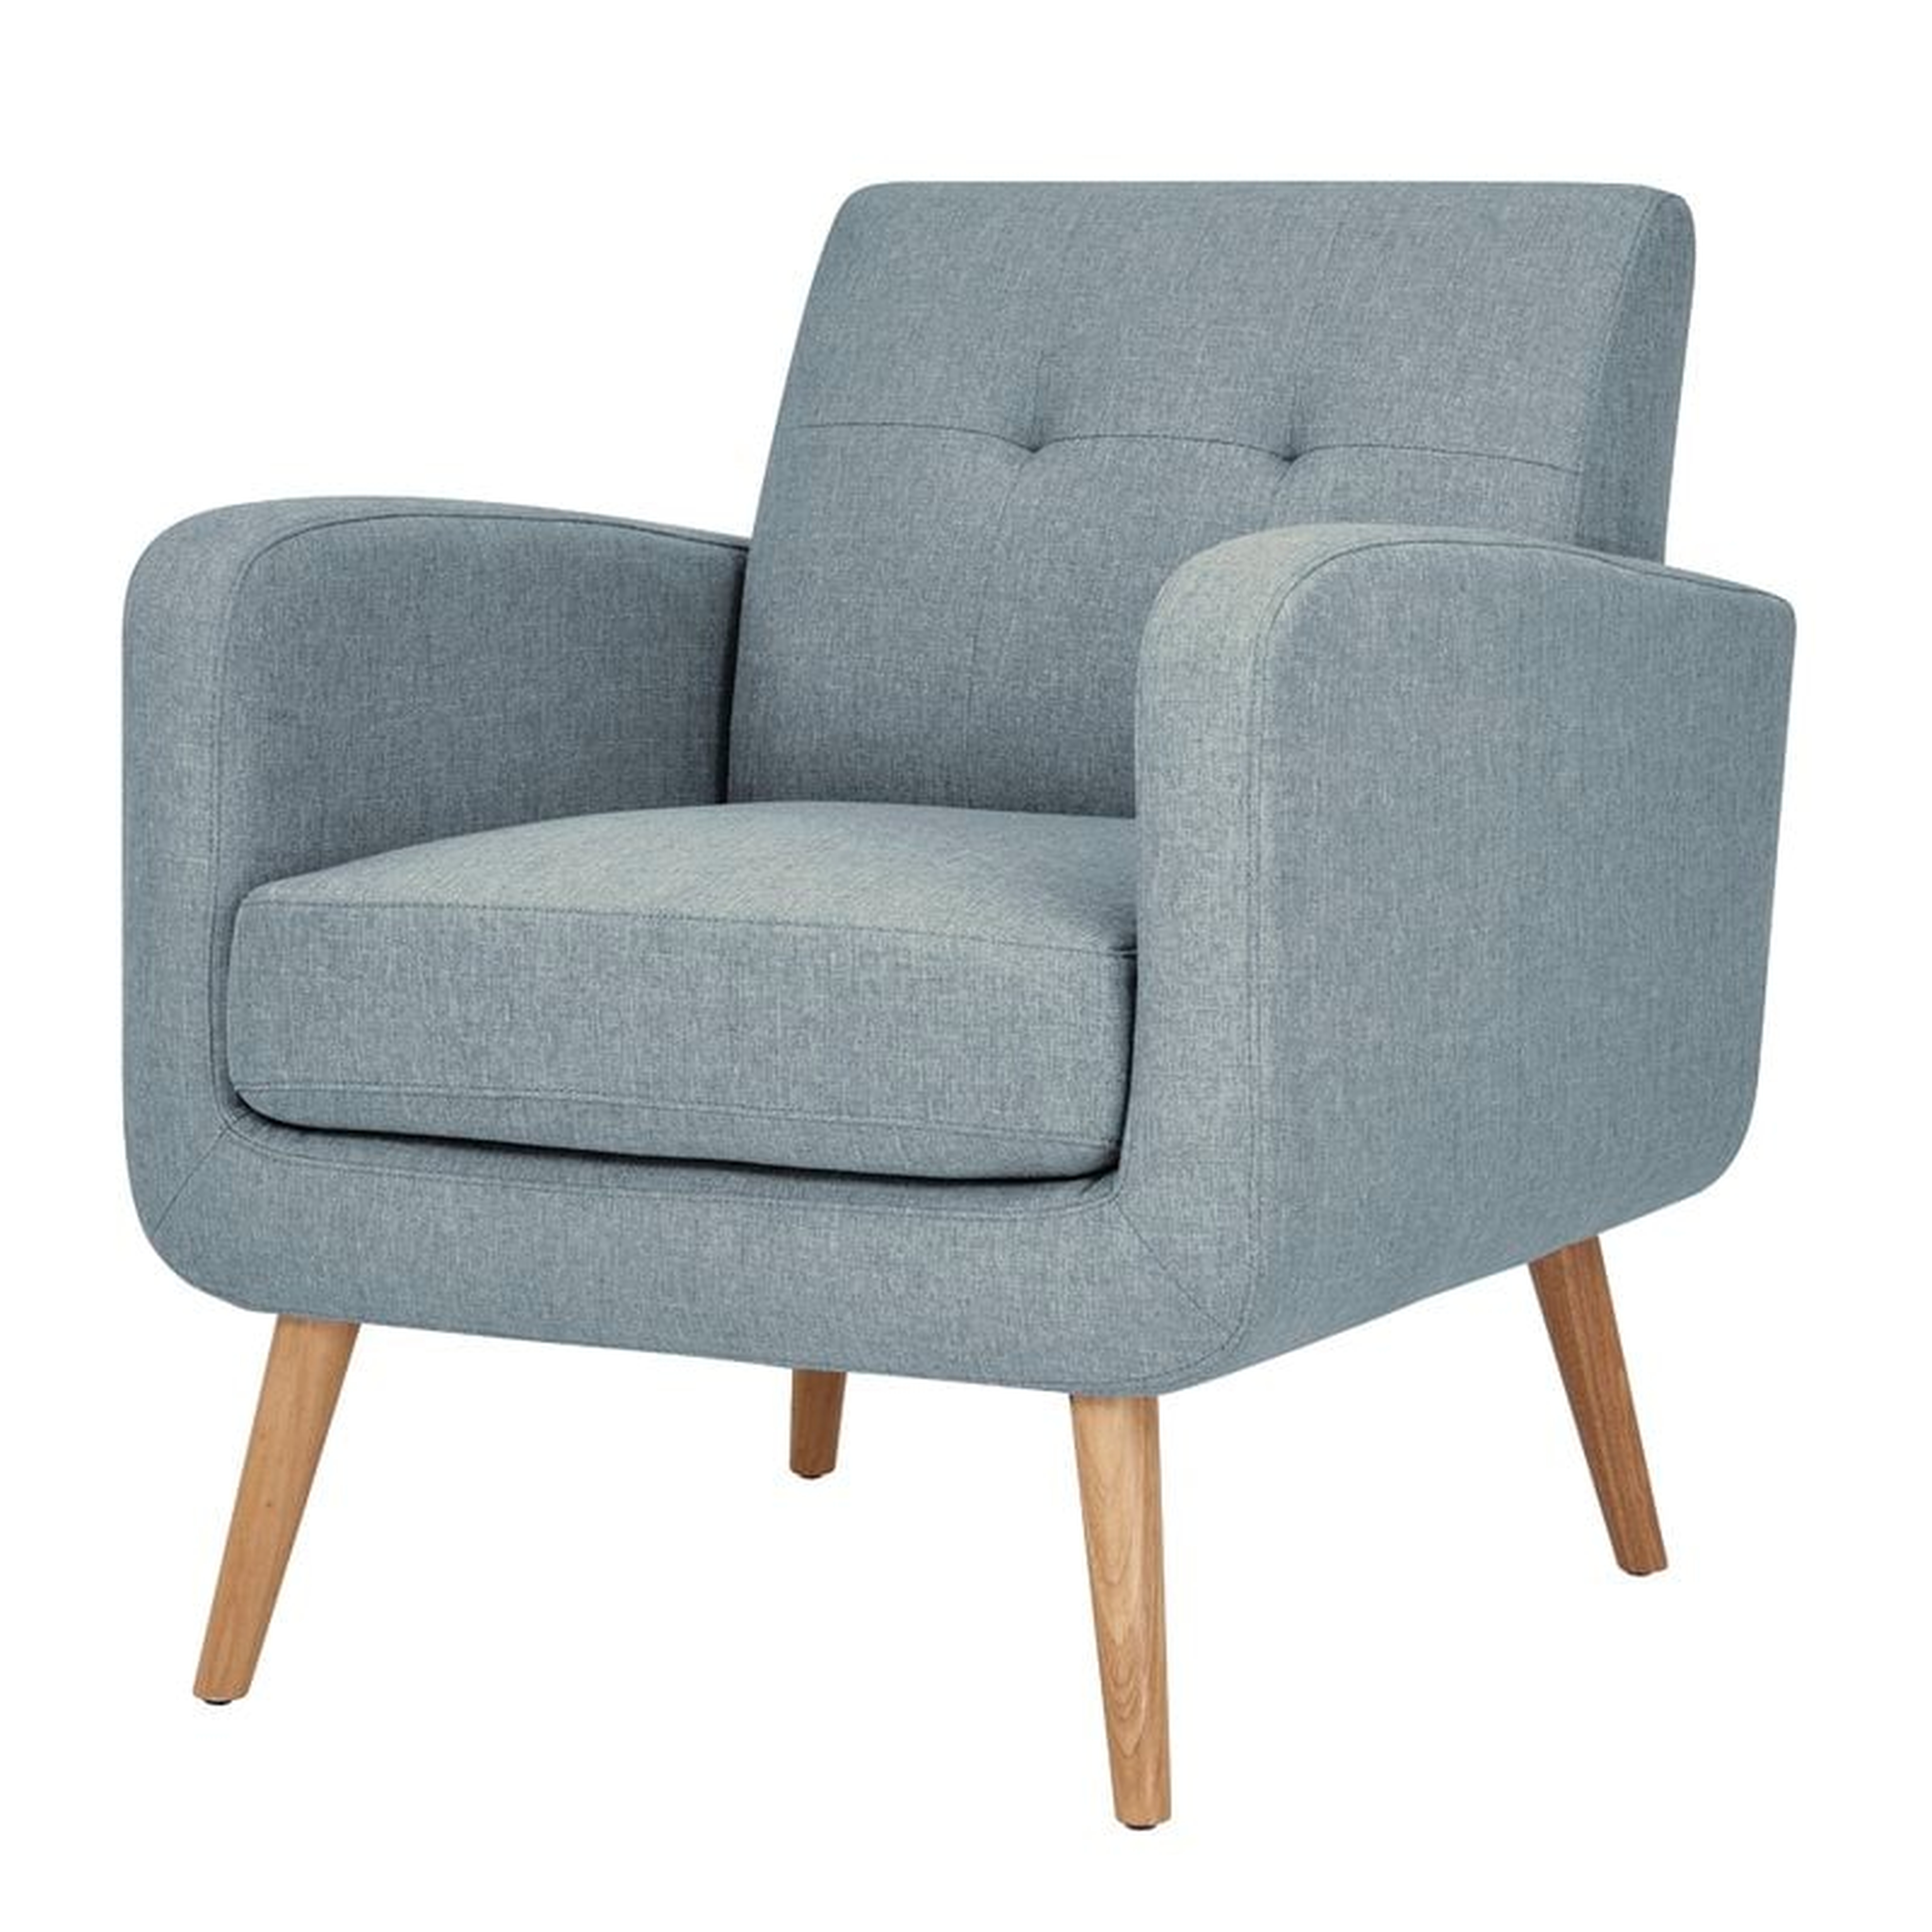 Valmy Lounge Chair - Light Blue Linen - AllModern